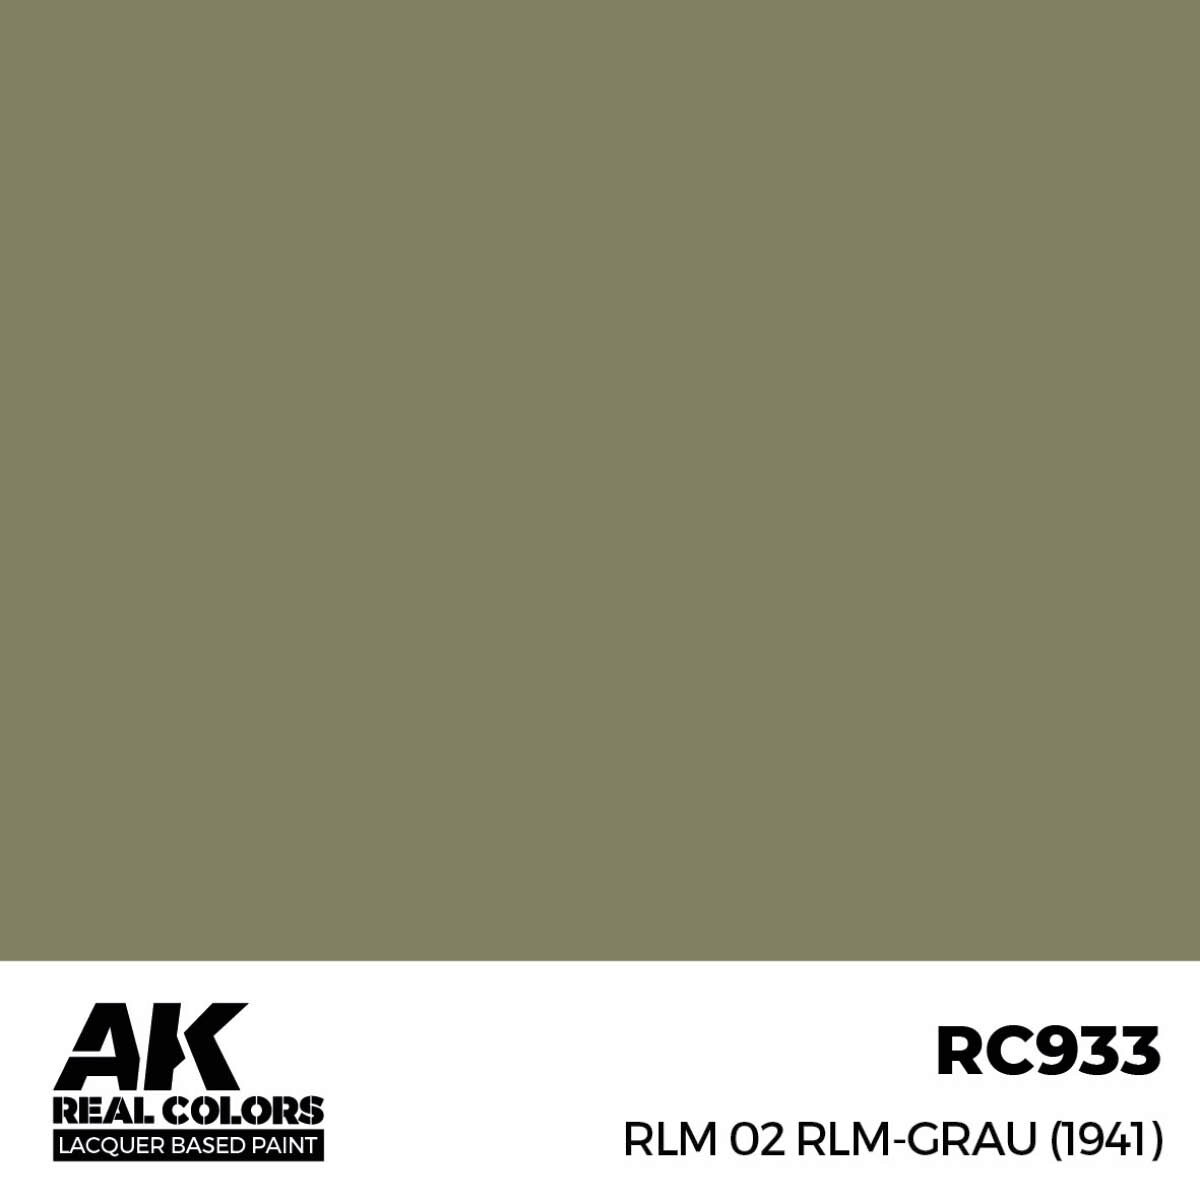 AK RC933 Real Colors RLM 02 RLM-GRAU (1941) 17 ml.